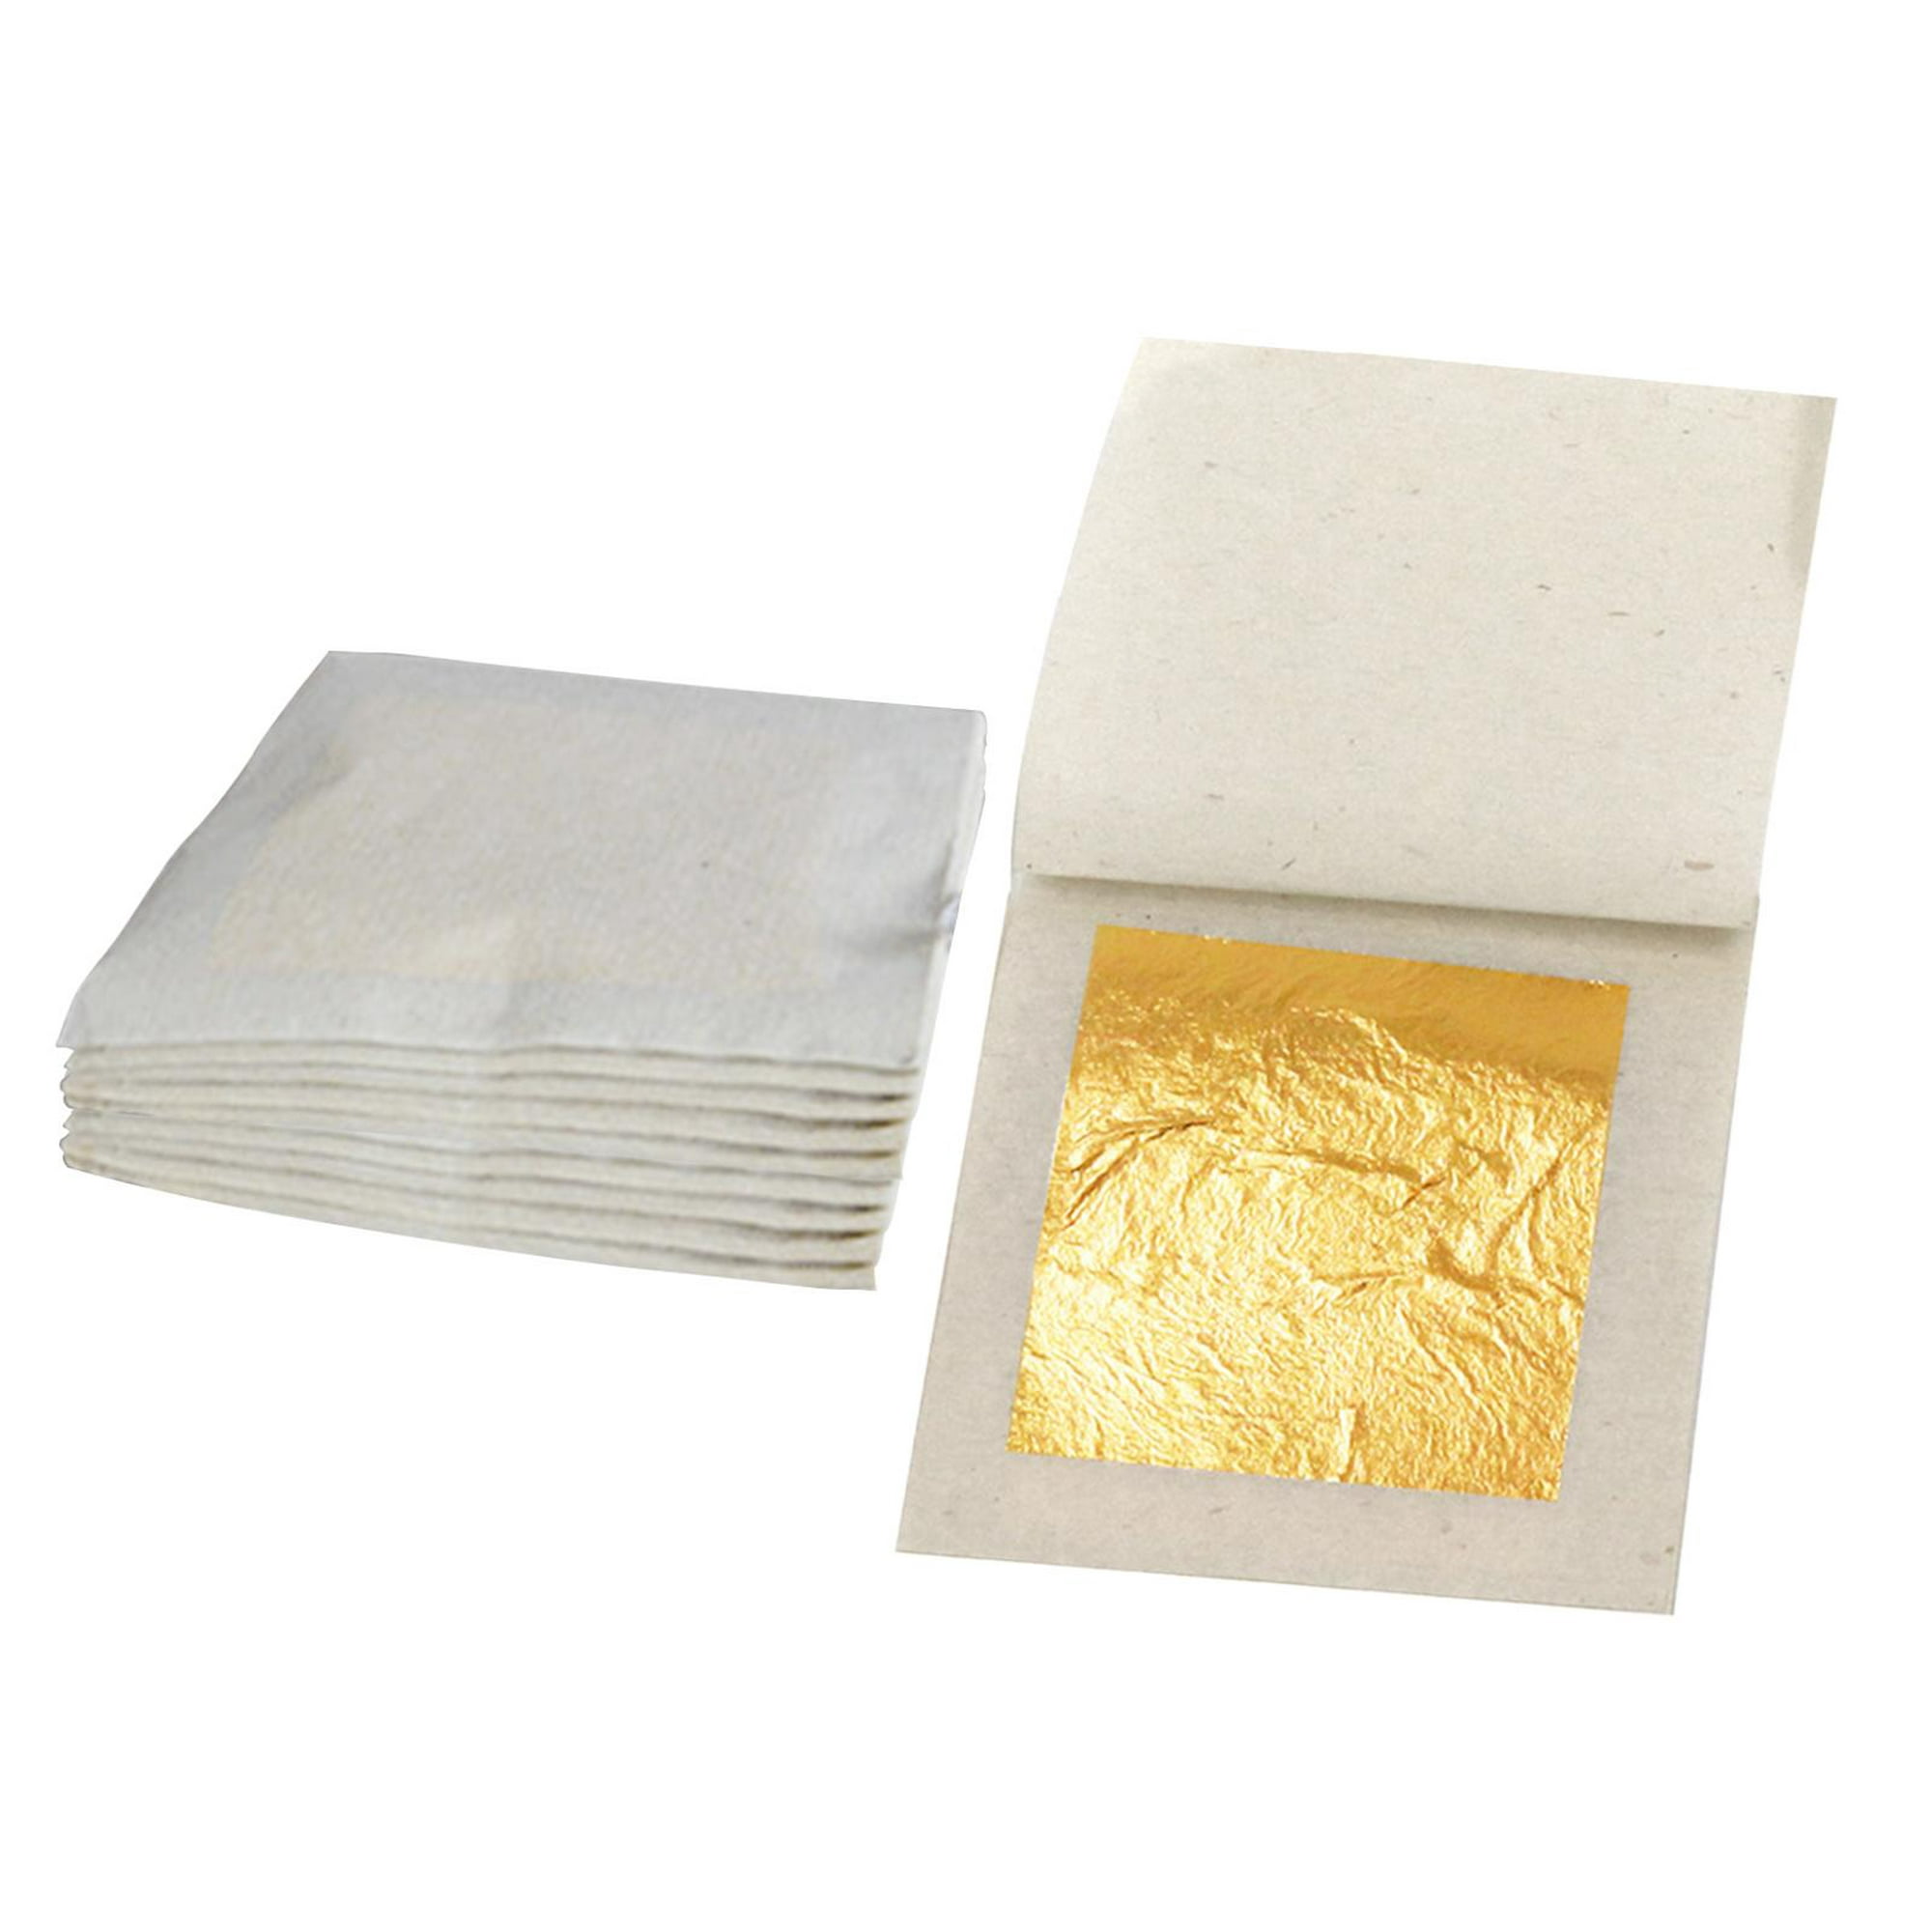  Papel de aluminio dorado de imitación de hoja de papel dorado  dorado para manualidades, decoración de fiesta de cumpleaños, boda : Arte y  Manualidades